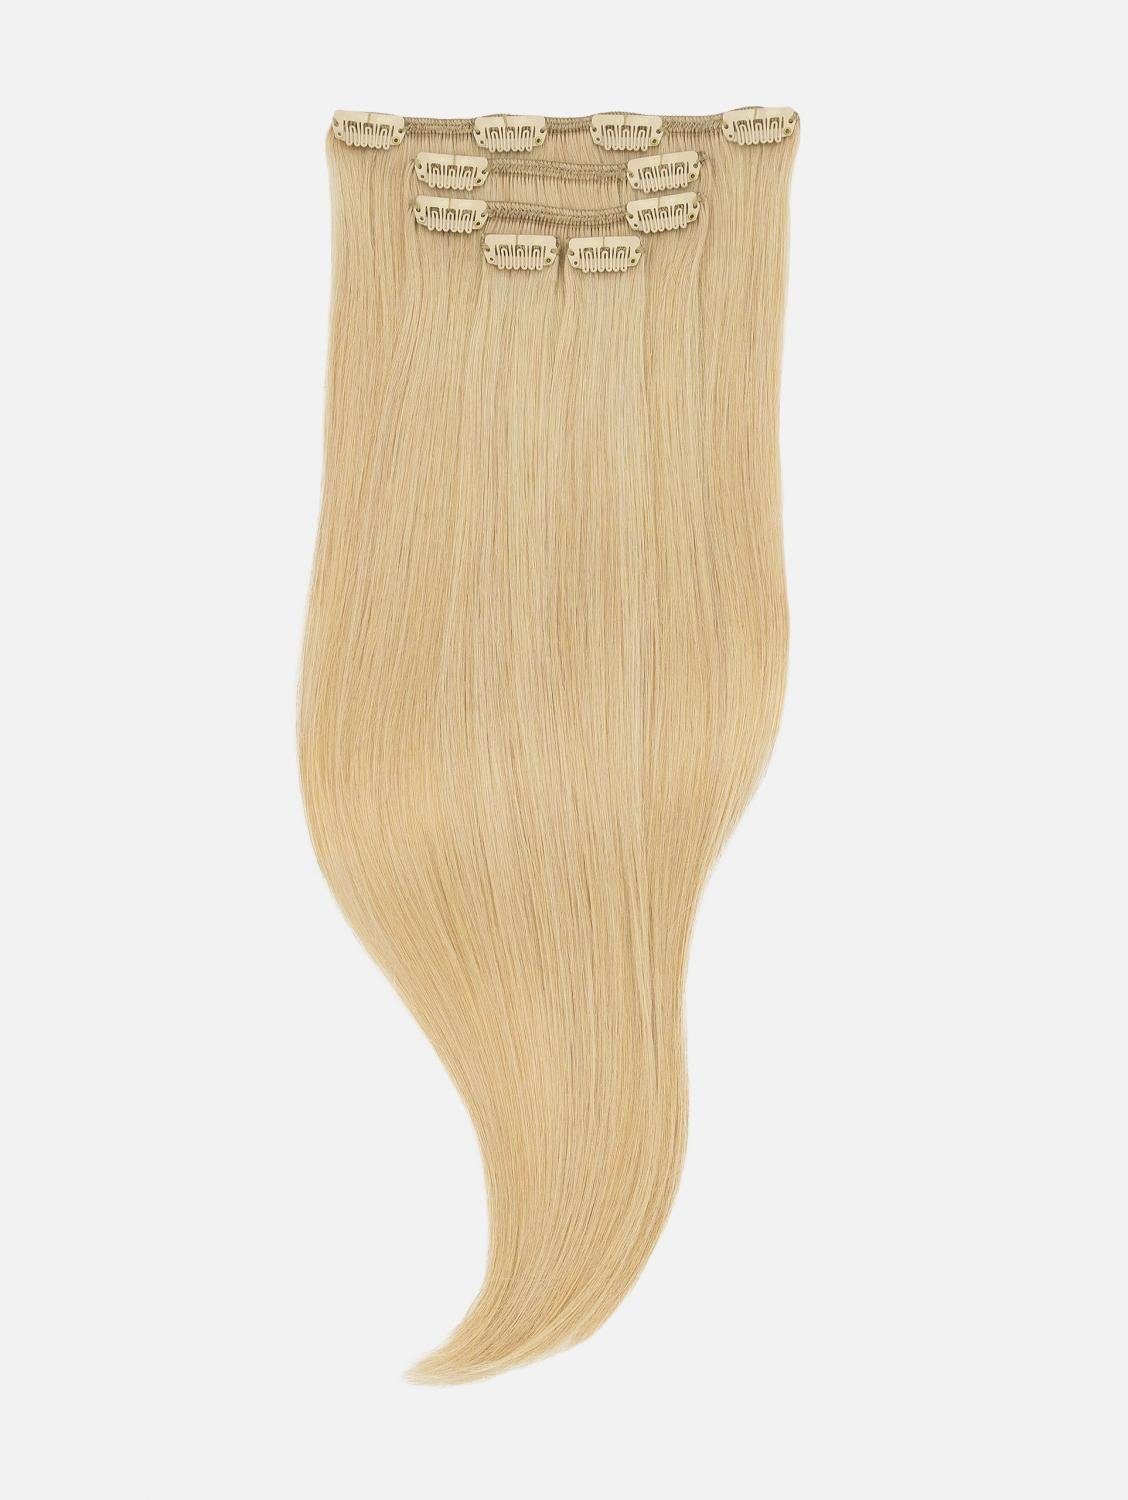 NATURAL Seidenglatt Blonde) Haarverlängerung Echthaar Extensions EH - Up (Pin Echthaar-Extension 40cm, Clip-In 50cm, 5-teilig Echthaar #24 -